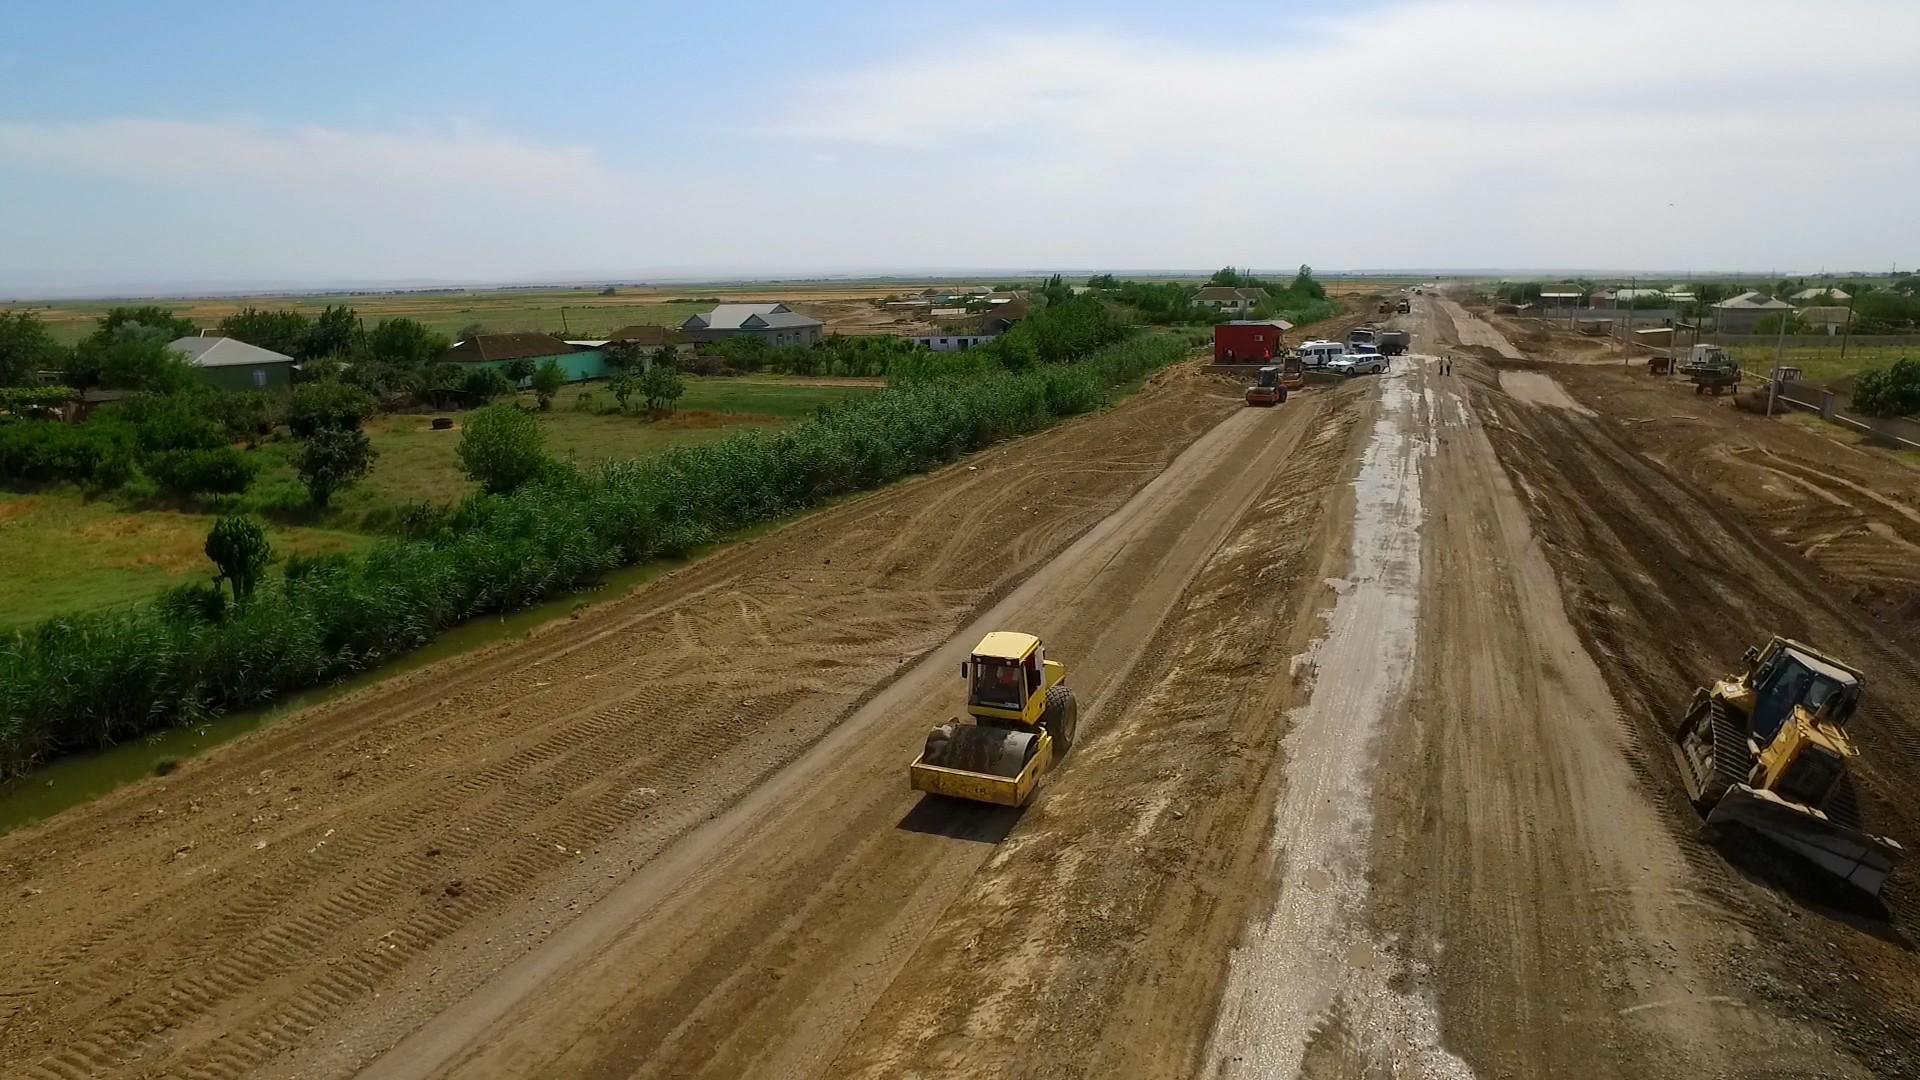 Şərq-Qərb və Şimal-Cənub nəqliyyat dəhlizlərini əlaqələndirən daha bir avtomobil yolu yenidən qurulur